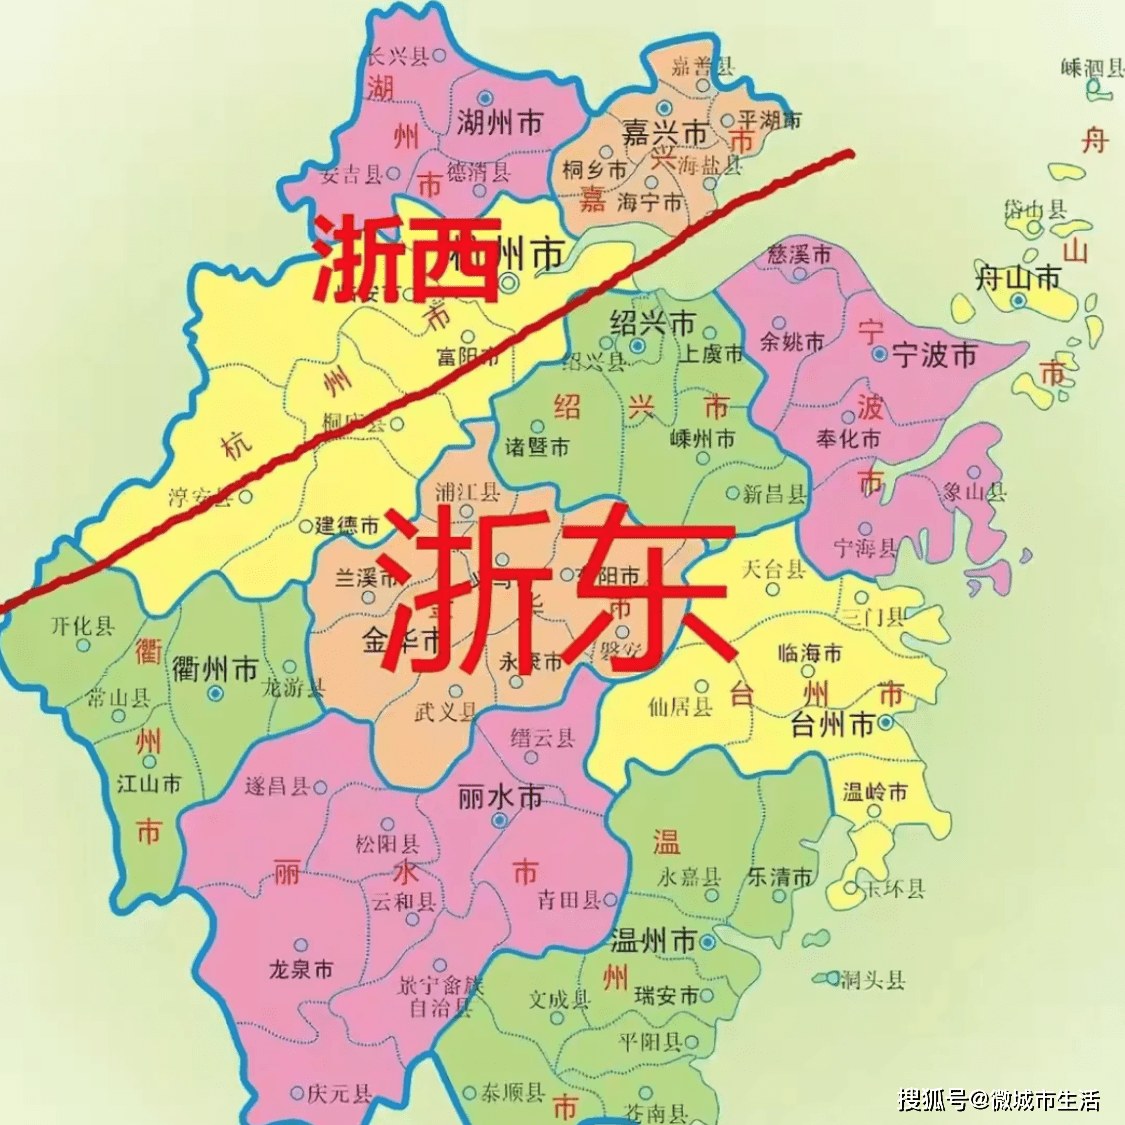 说说浙江是个怎样神奇的省份